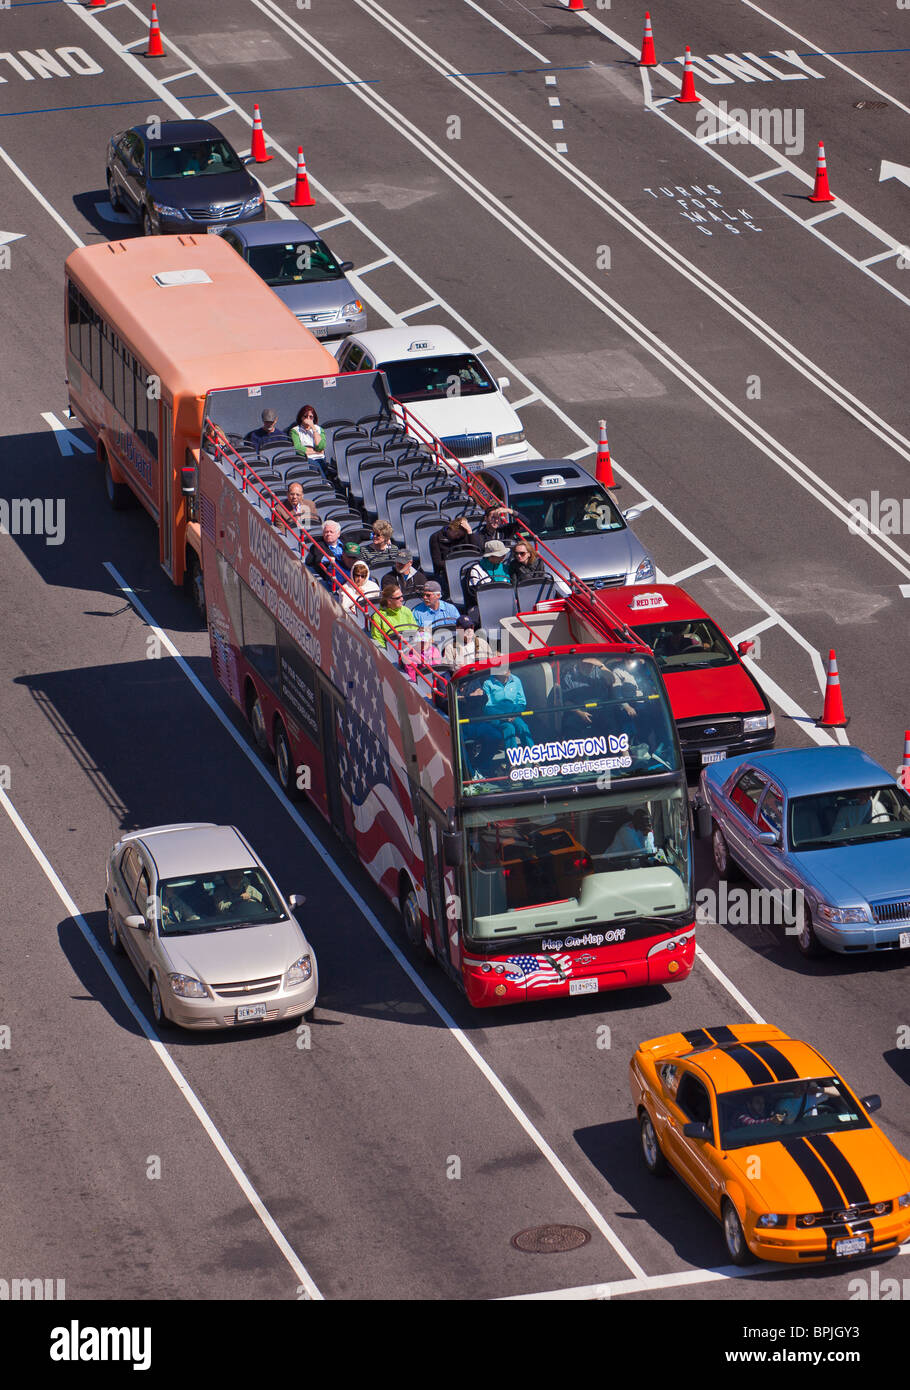 WASHINGTON, DC, USA - Doubledecker tour bus on Pennsylvania Avenue. Stock Photo